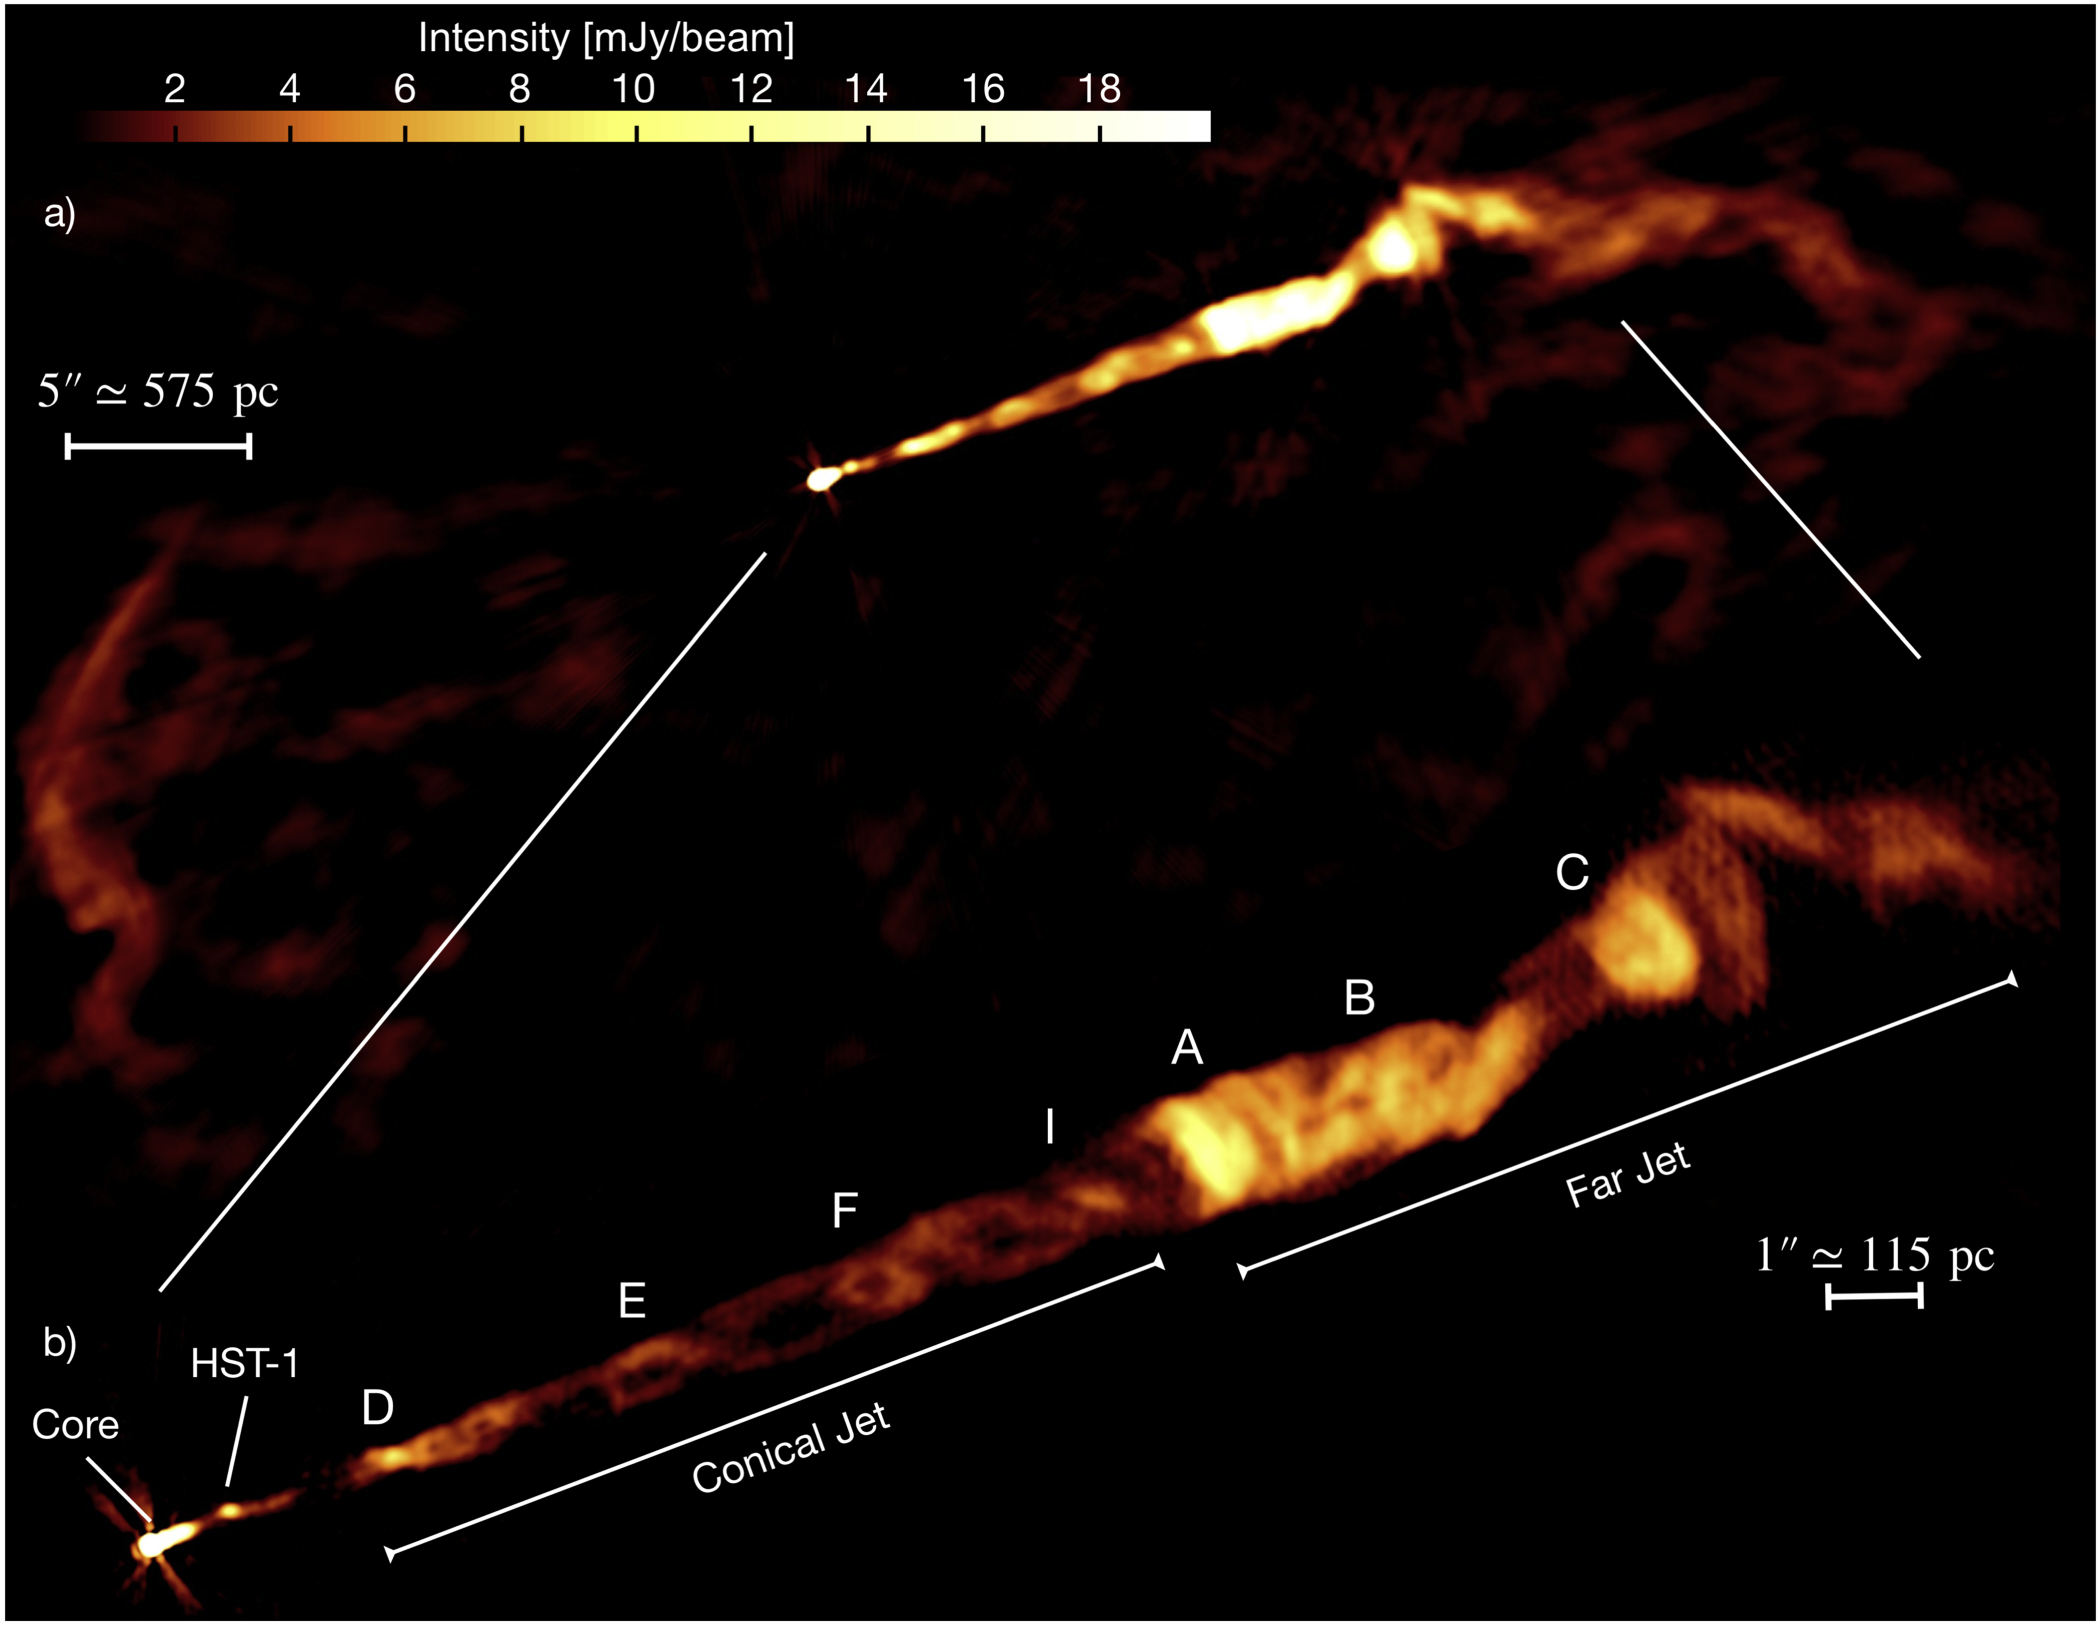 Obraz radiowego dżetu radiowego w galaktyce M87 uzyskany za pomocą VLA we wszystkich dostępnych częstotliwościach (od 4 do 18 GHz). U góry (a) - widać całą morfologię dżetu w rozdzielczości 0,2": jądro, silnie skolimowaną, stożkową część dżetu, która kończy się na kilku jasnych węzłach i dużych, rozciągniętych płatach. U dołu (b) - widać szczegółową strukturę stożkowej części dżetu w wyższej rozdzielczości (0,09”). Na obrazie widać wyraźnie strukturę podwójnej helisy w stożkowej części dżetu. Źródło: Pasetto et al., doi: 10.3847/2041-8213/ac3a88